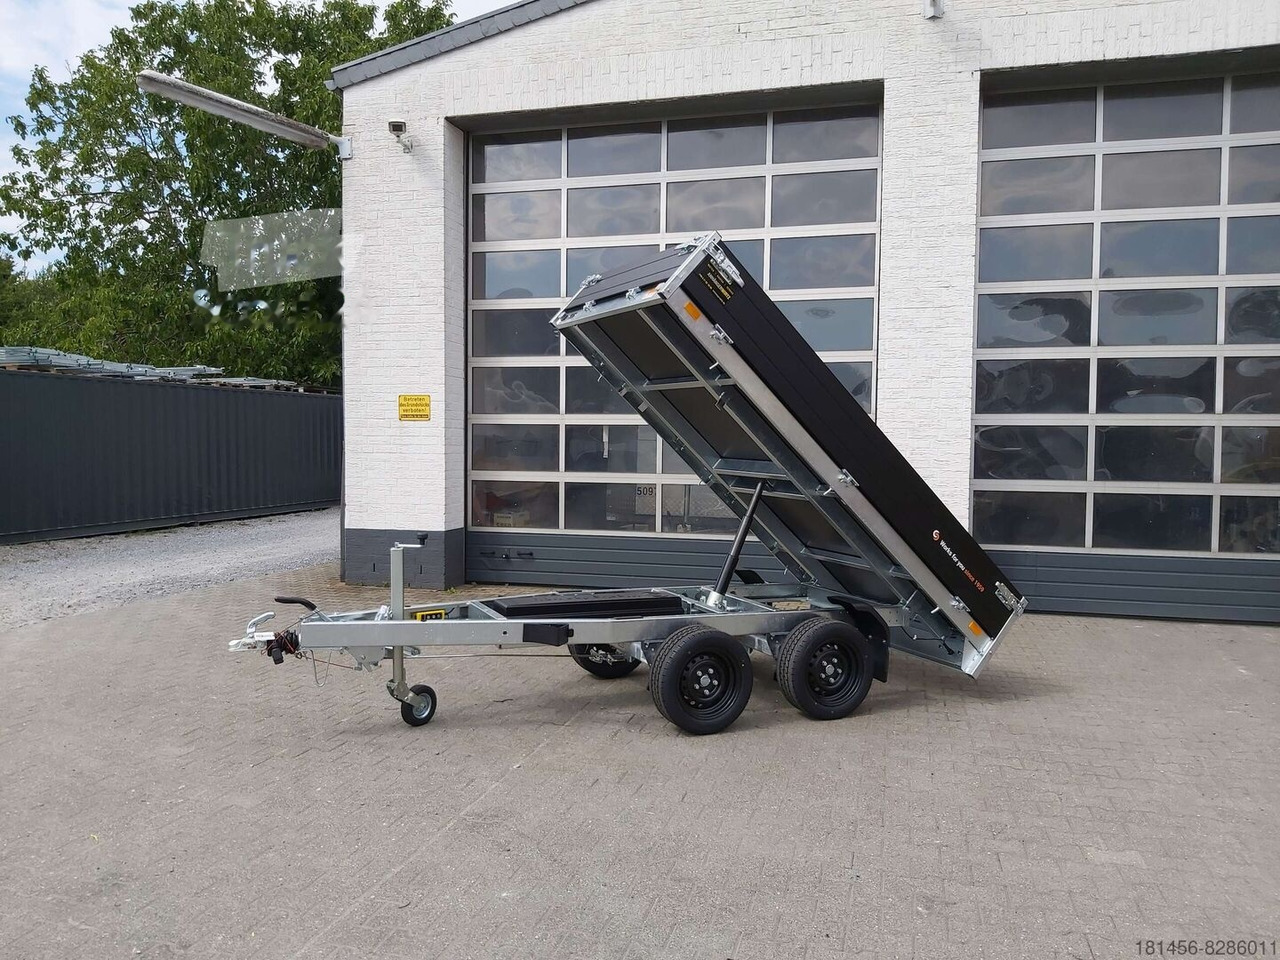 Saris Heckkipper K1 276 150 2700kg elektro direkt verfügbar jetzt kaufen - Tipper trailer: picture 1